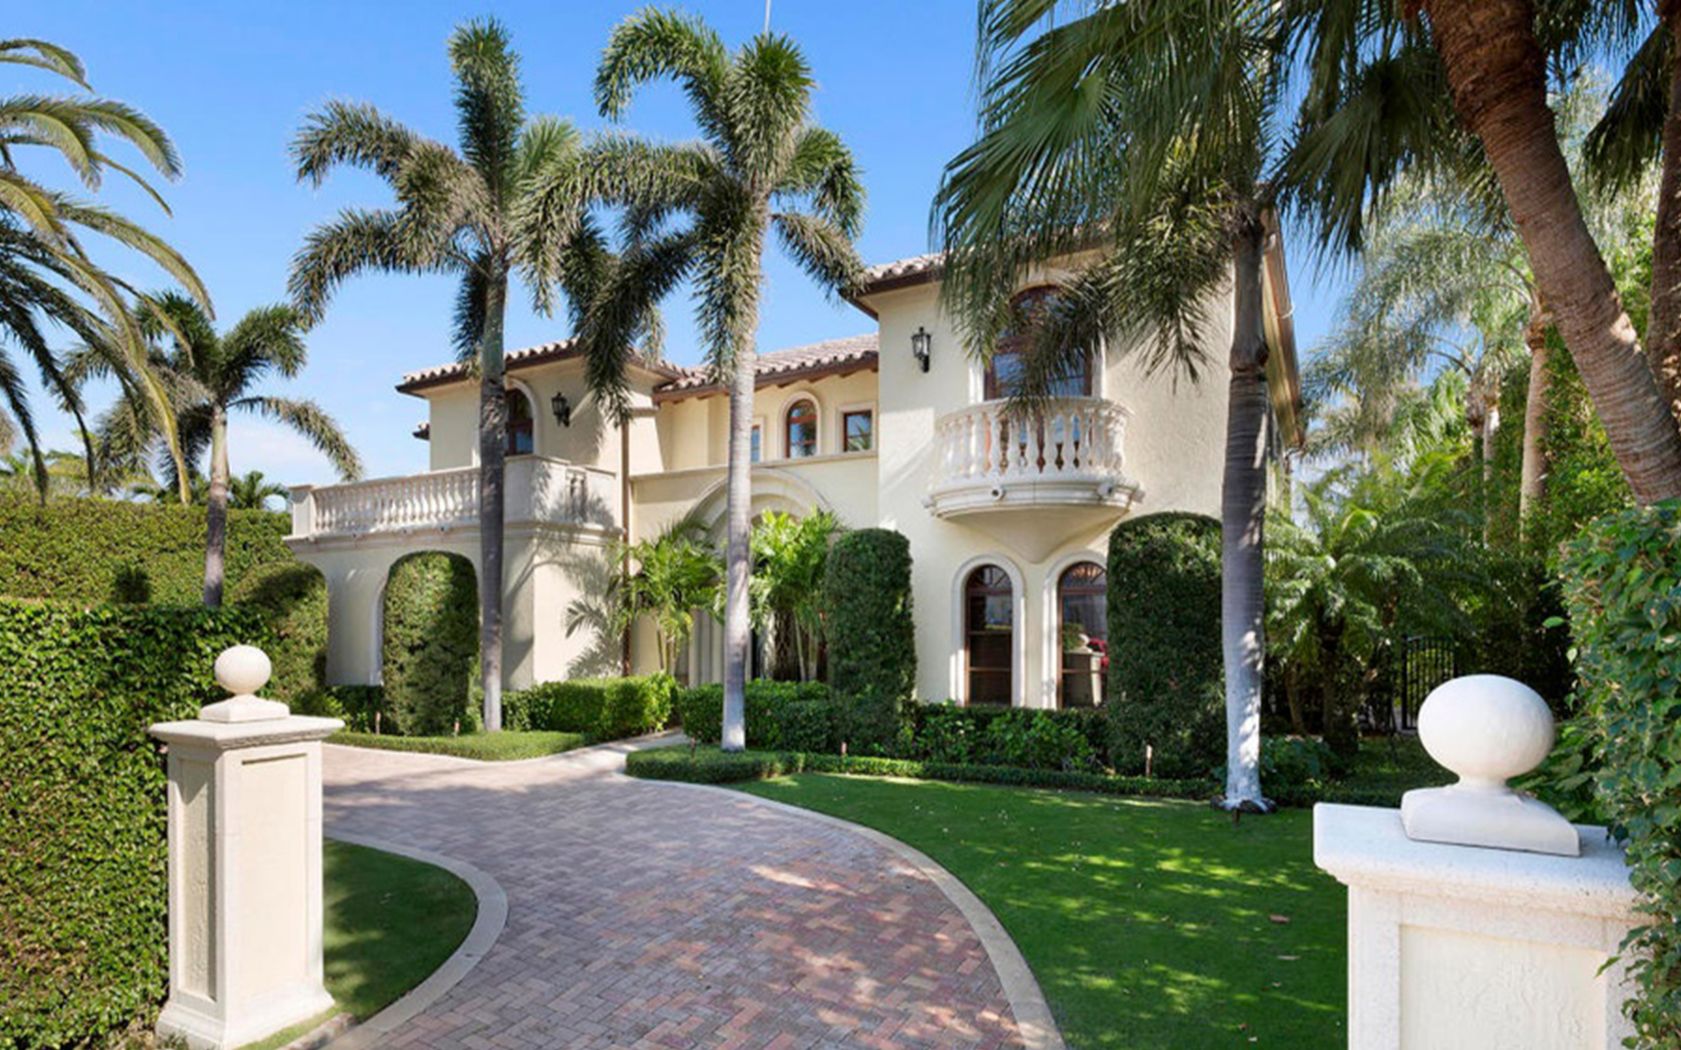 豪宅欣赏在佛罗里达州棕榈滩的两层地中海风格豪宅560islanddrpalm